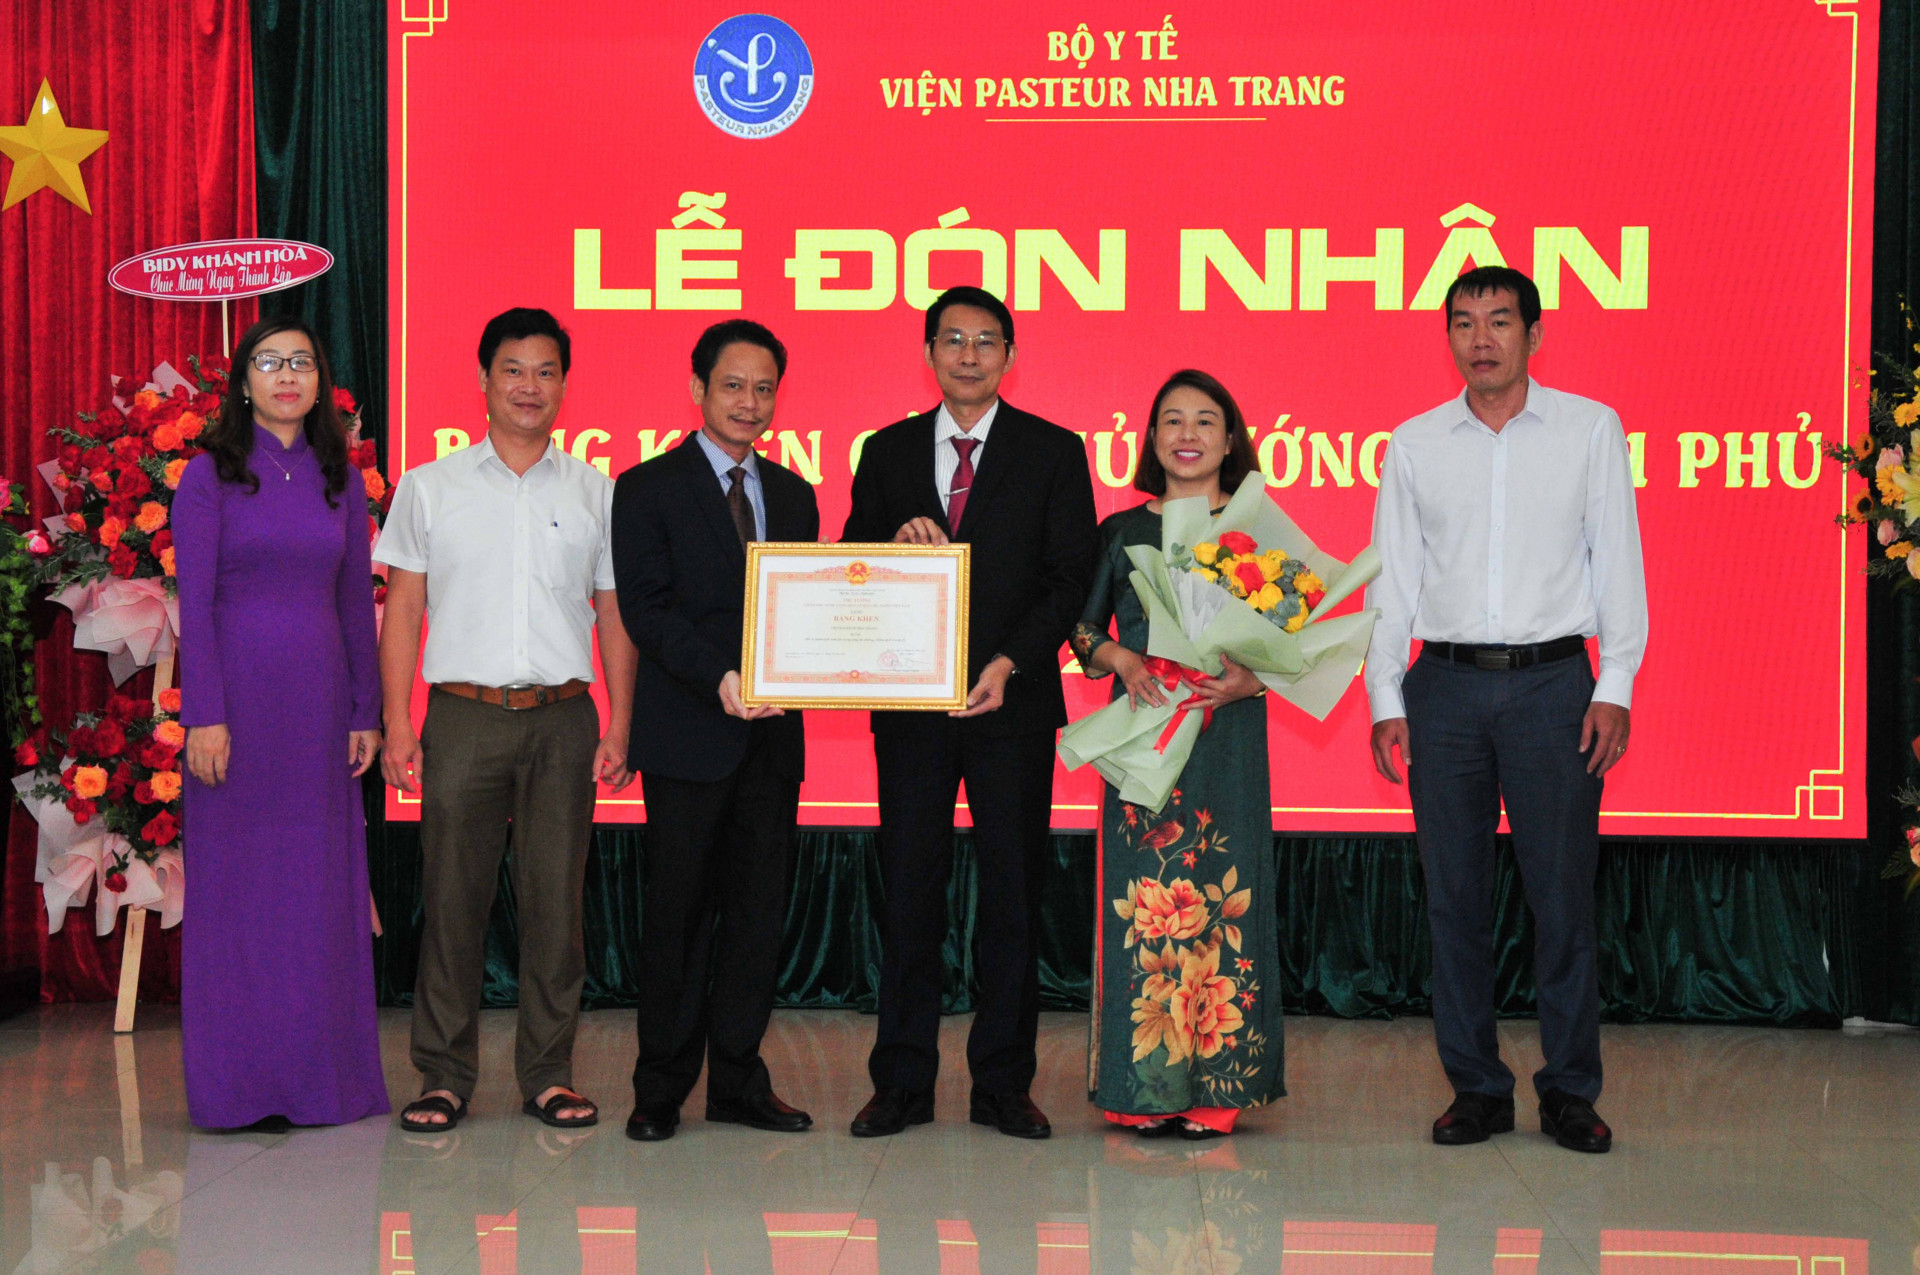 Ông Đinh Văn Thiệu trao bằng khen của Thủ tướng Chính phủ cho Viện Pasteur Nha Trang